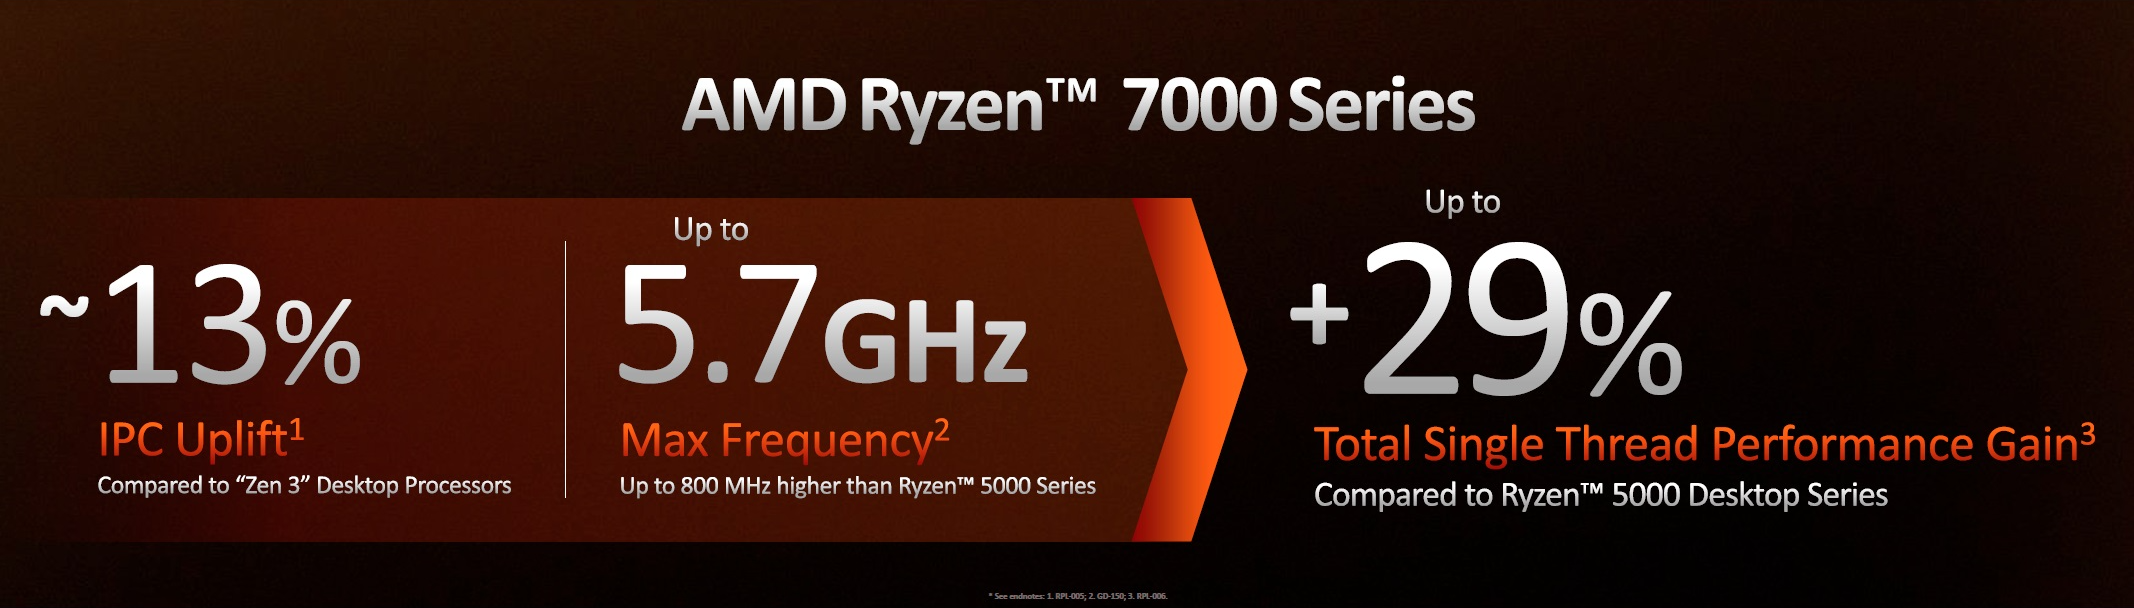 AMD Zen 4 Ryzen 7000 series "Raphael" processors